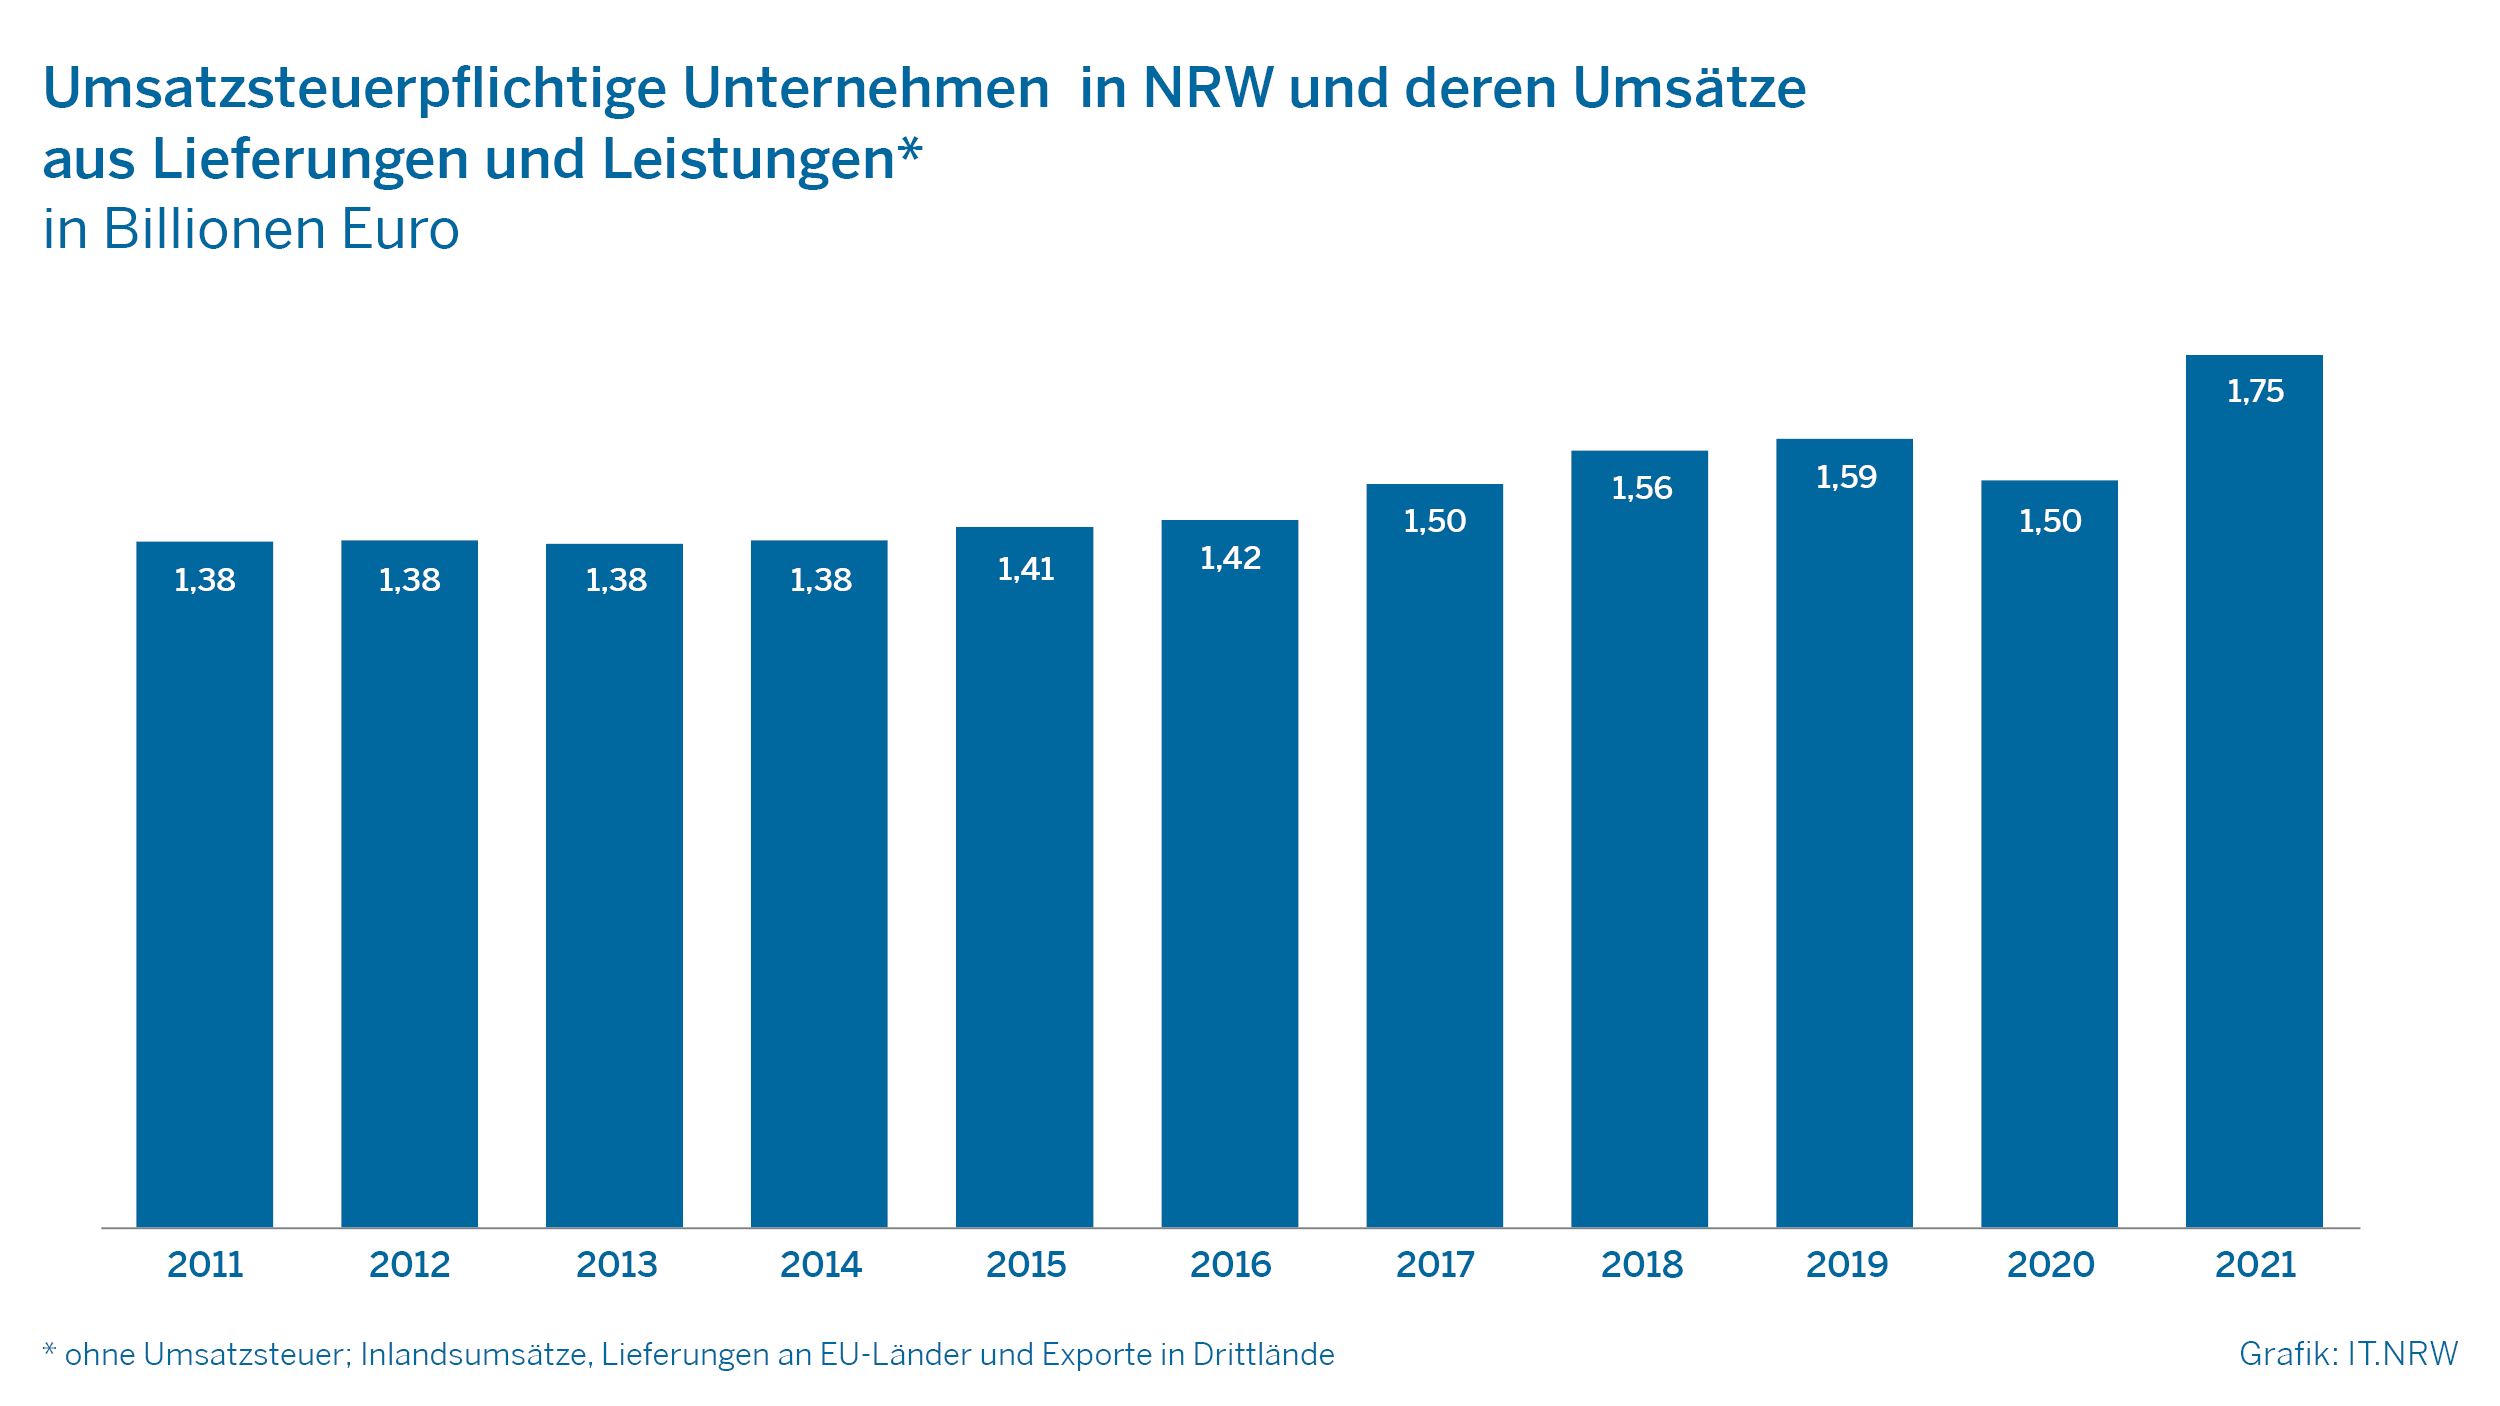 Umsatzsteuerpflichtige Unternehmen in NRW und deren Umsätze aus Lieferungen und Leistungen